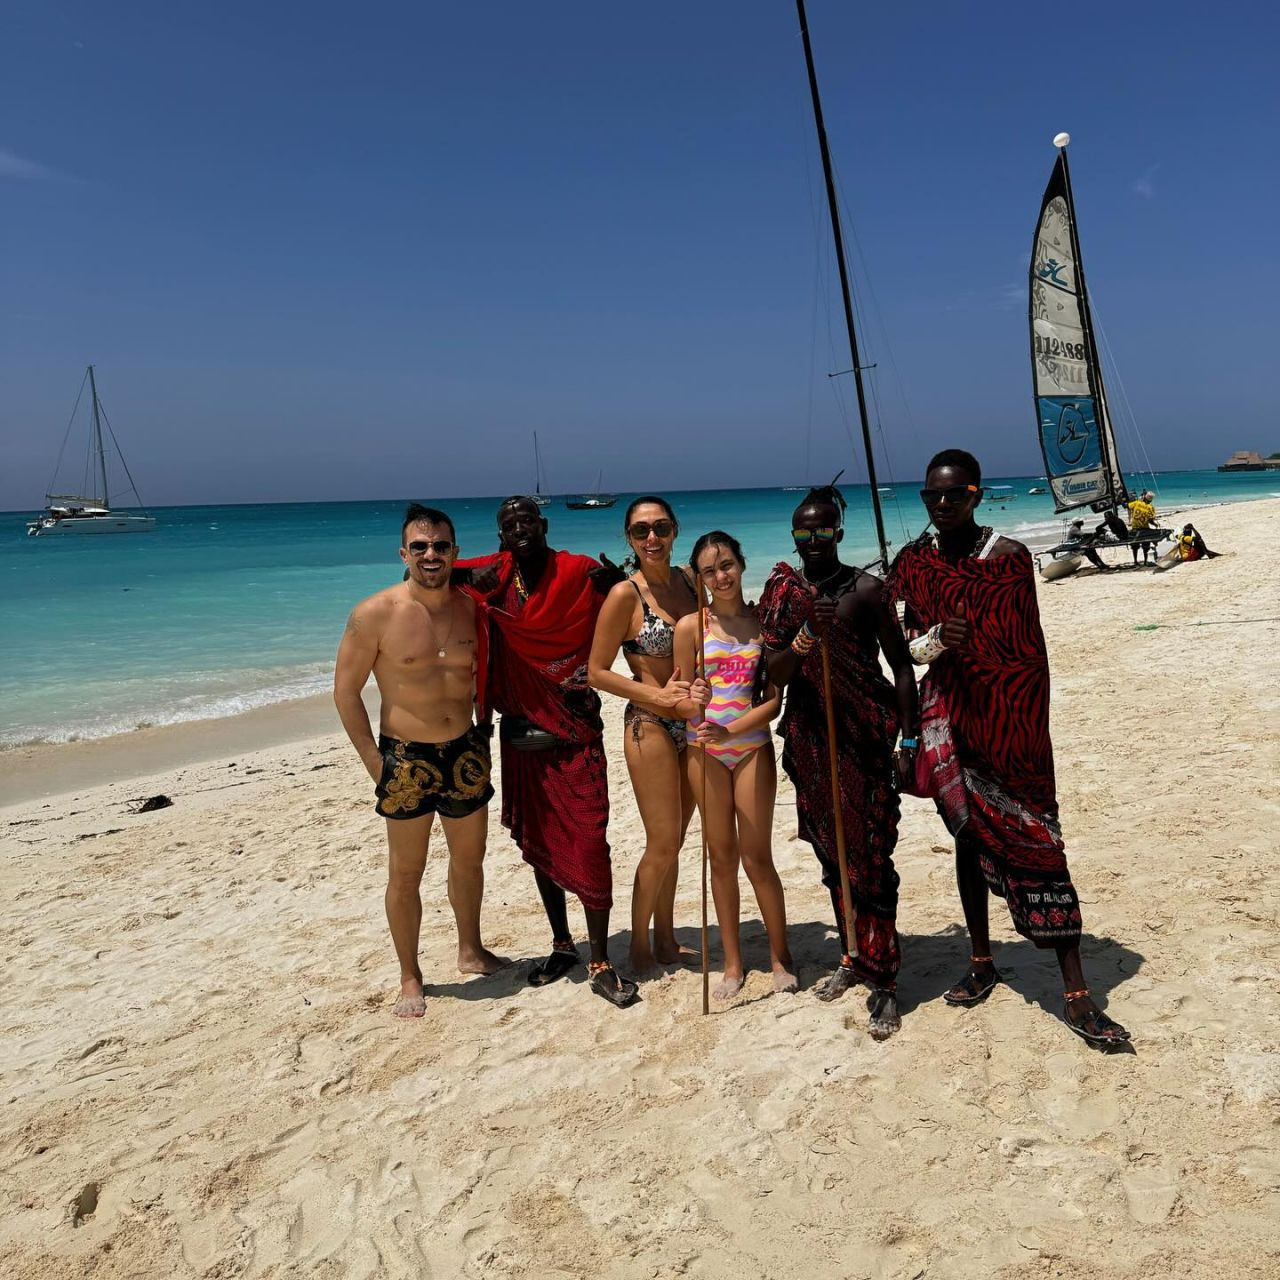 Zuhal Topal bikinili pozlarıyla Afrika'yı salladı - Sayfa 4